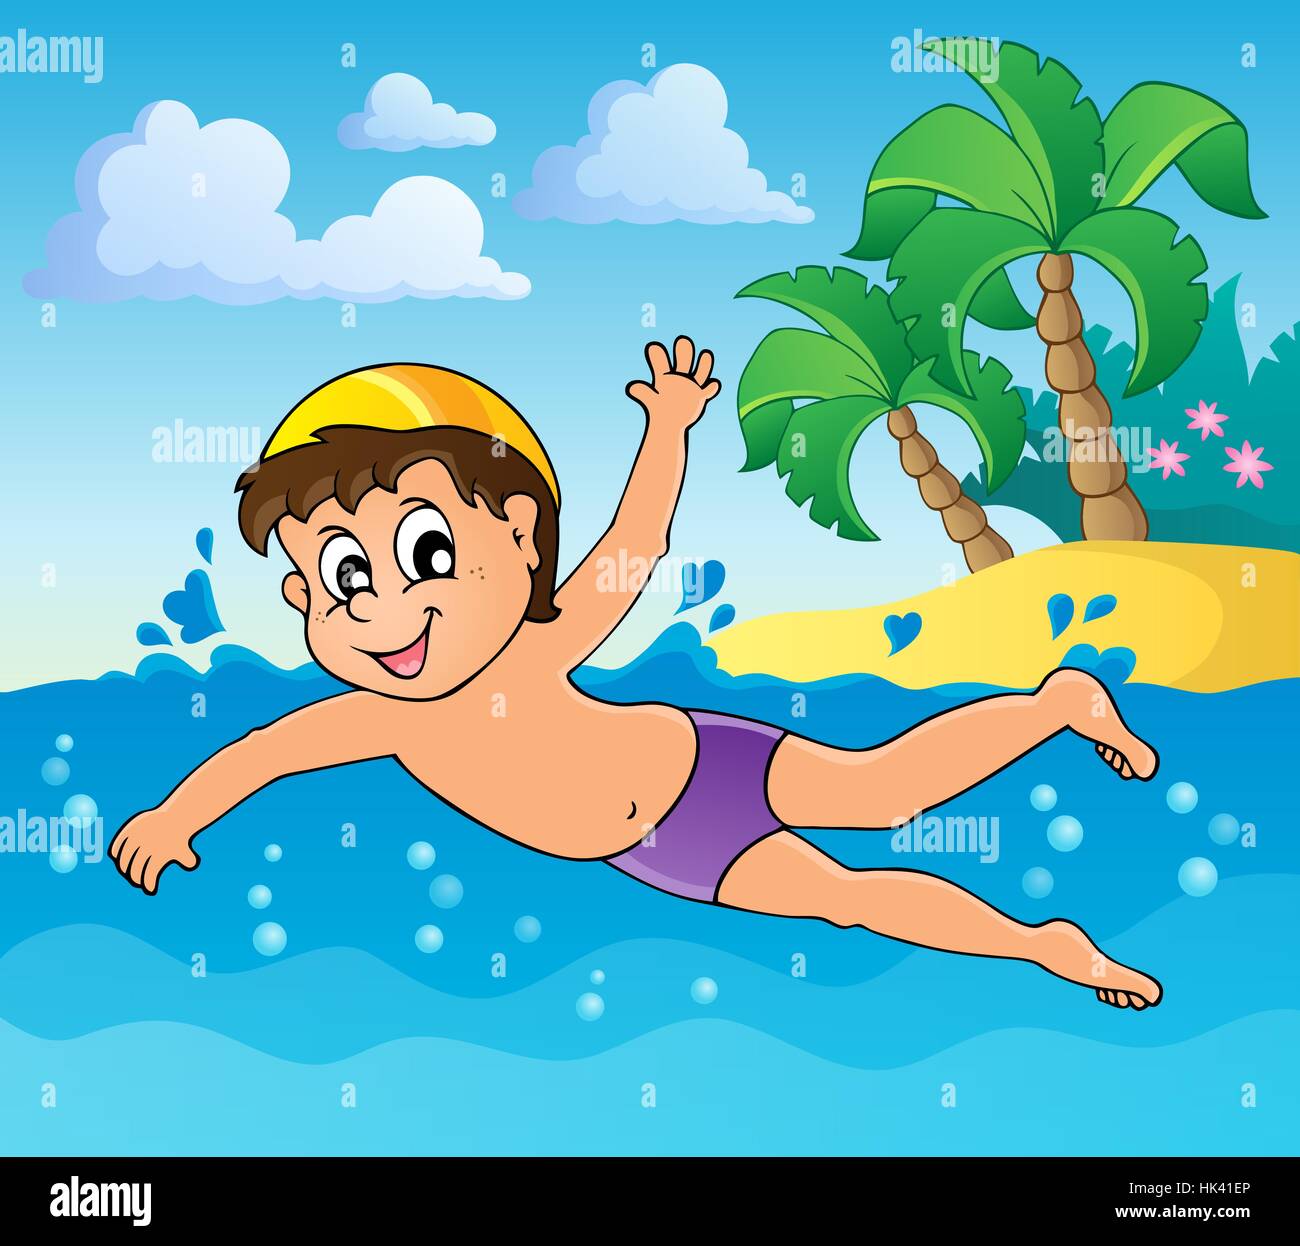 Переведи на английский плавать. Мальчик плавает в море. Иллюстрация купаться в море. Плавать в море картинка для детей. Мальчик купается в море.